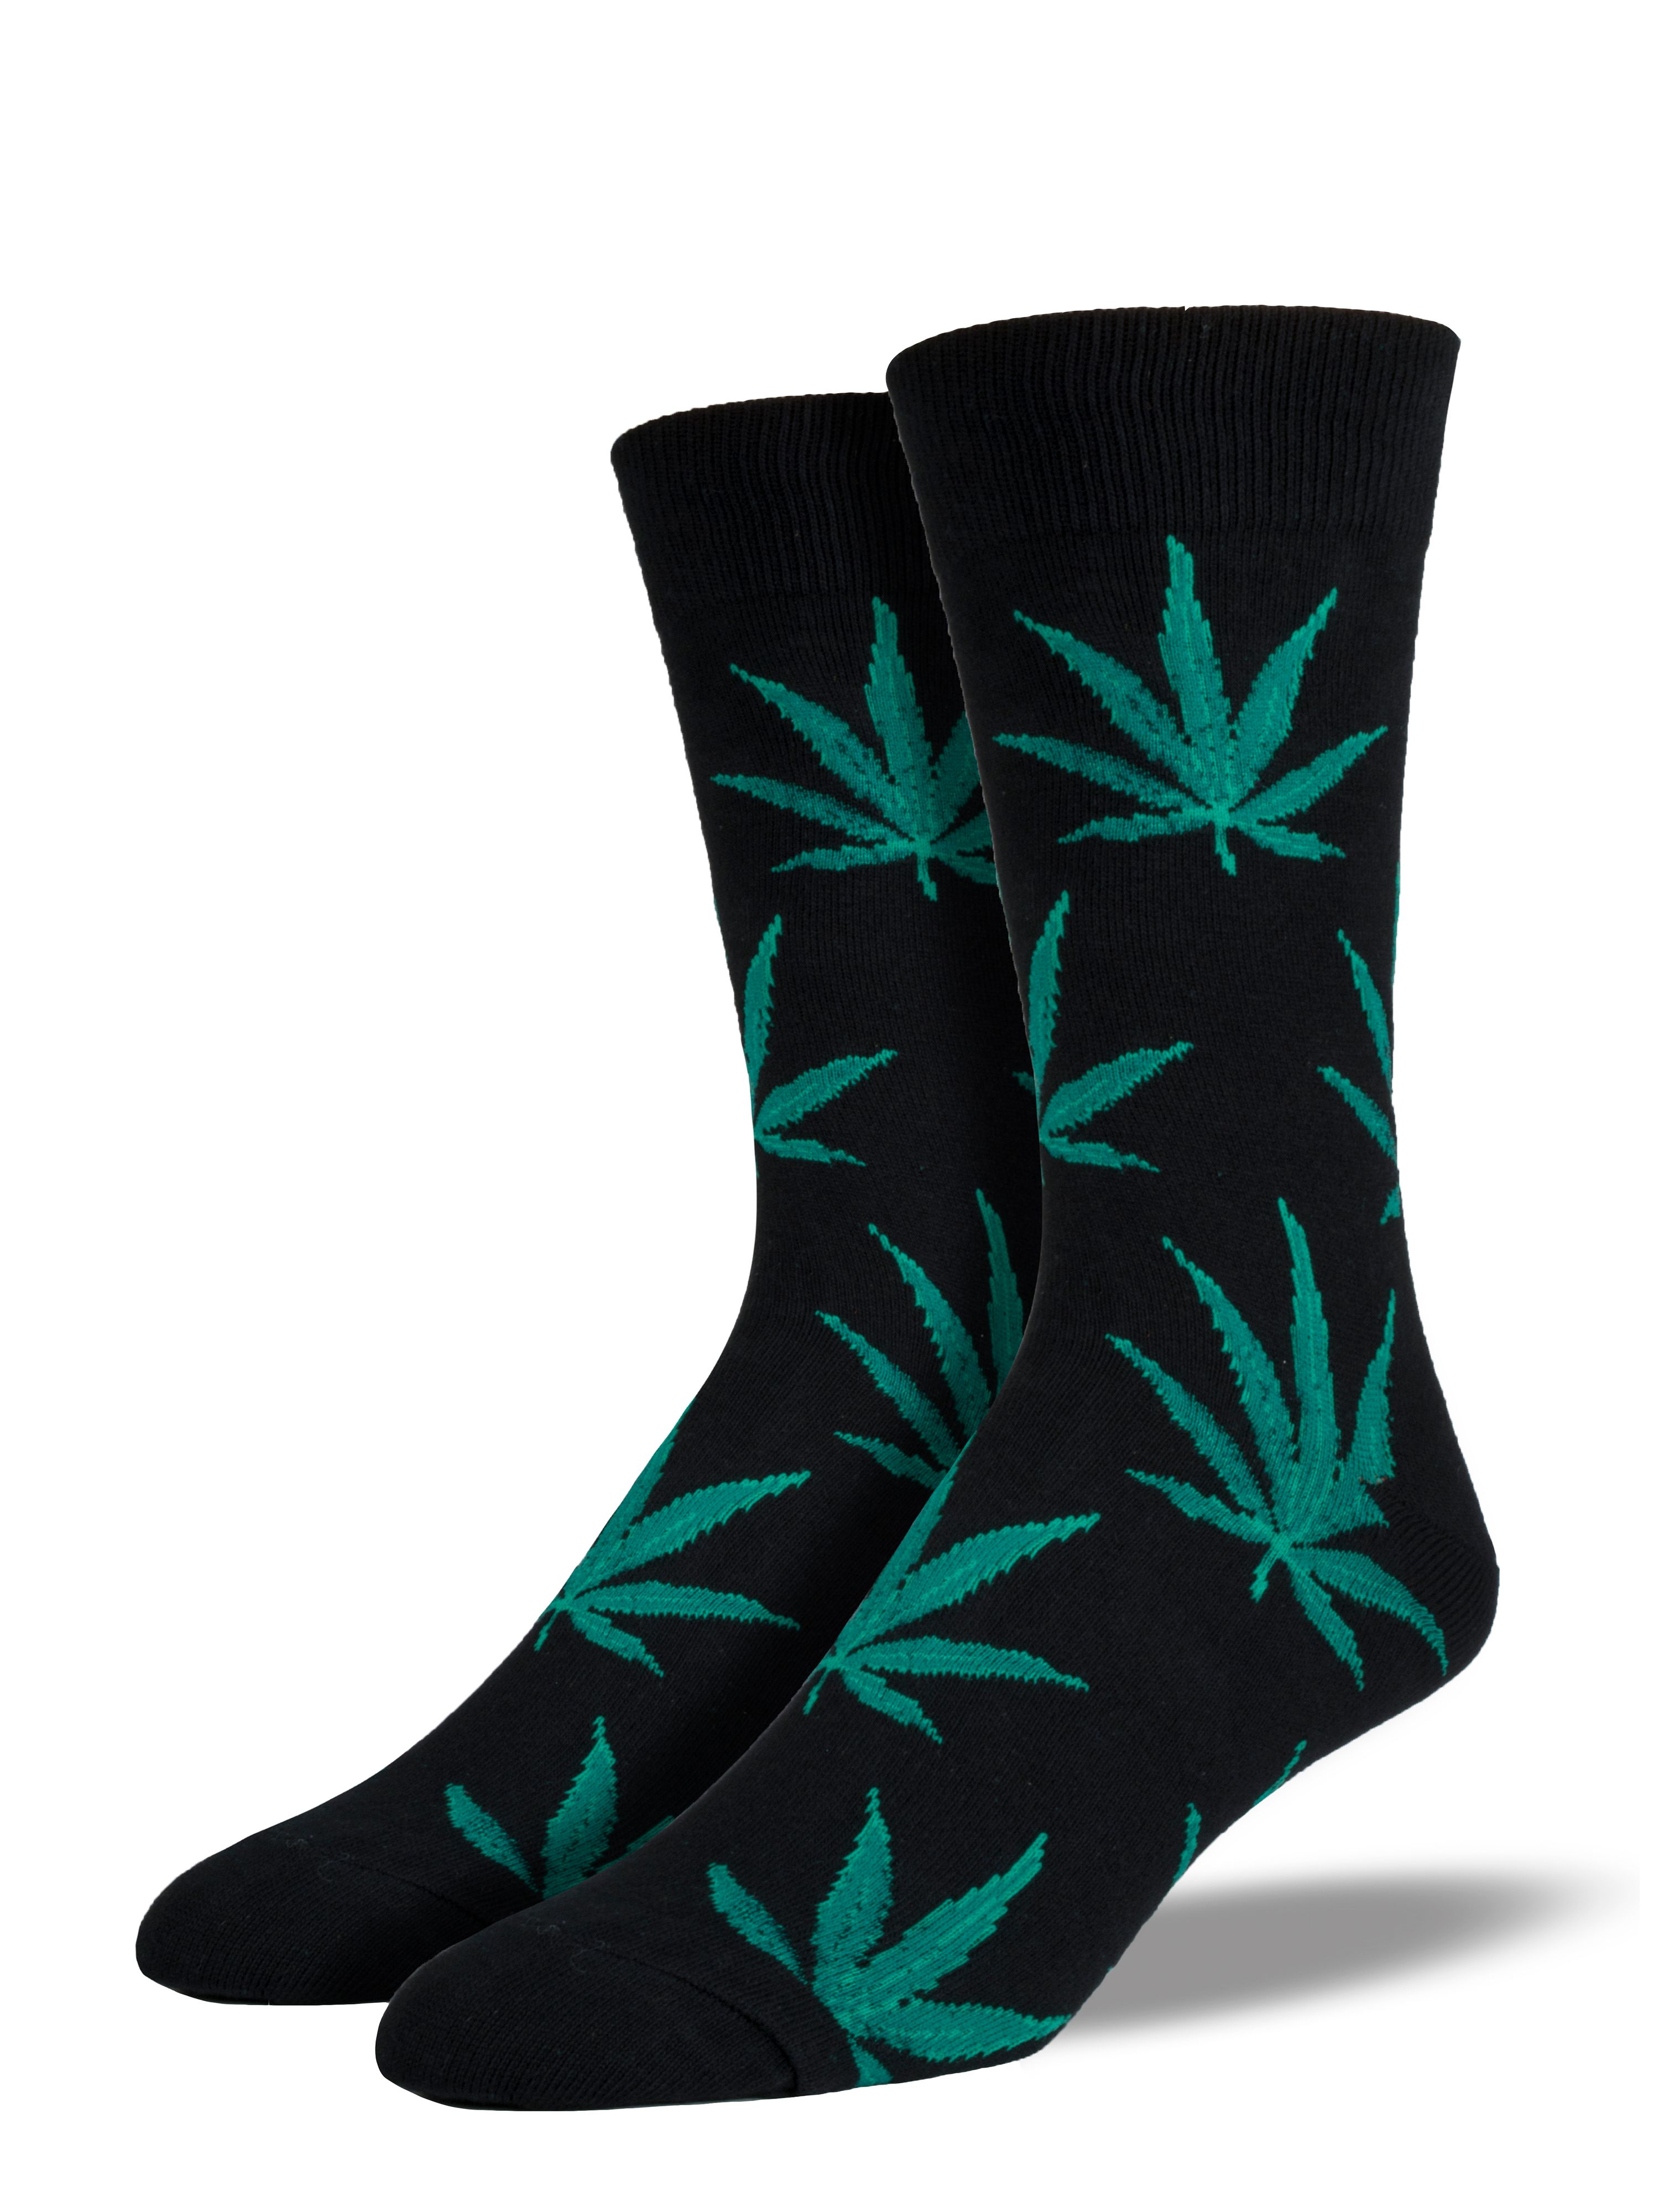 Pot Weed Black Socks Osfa